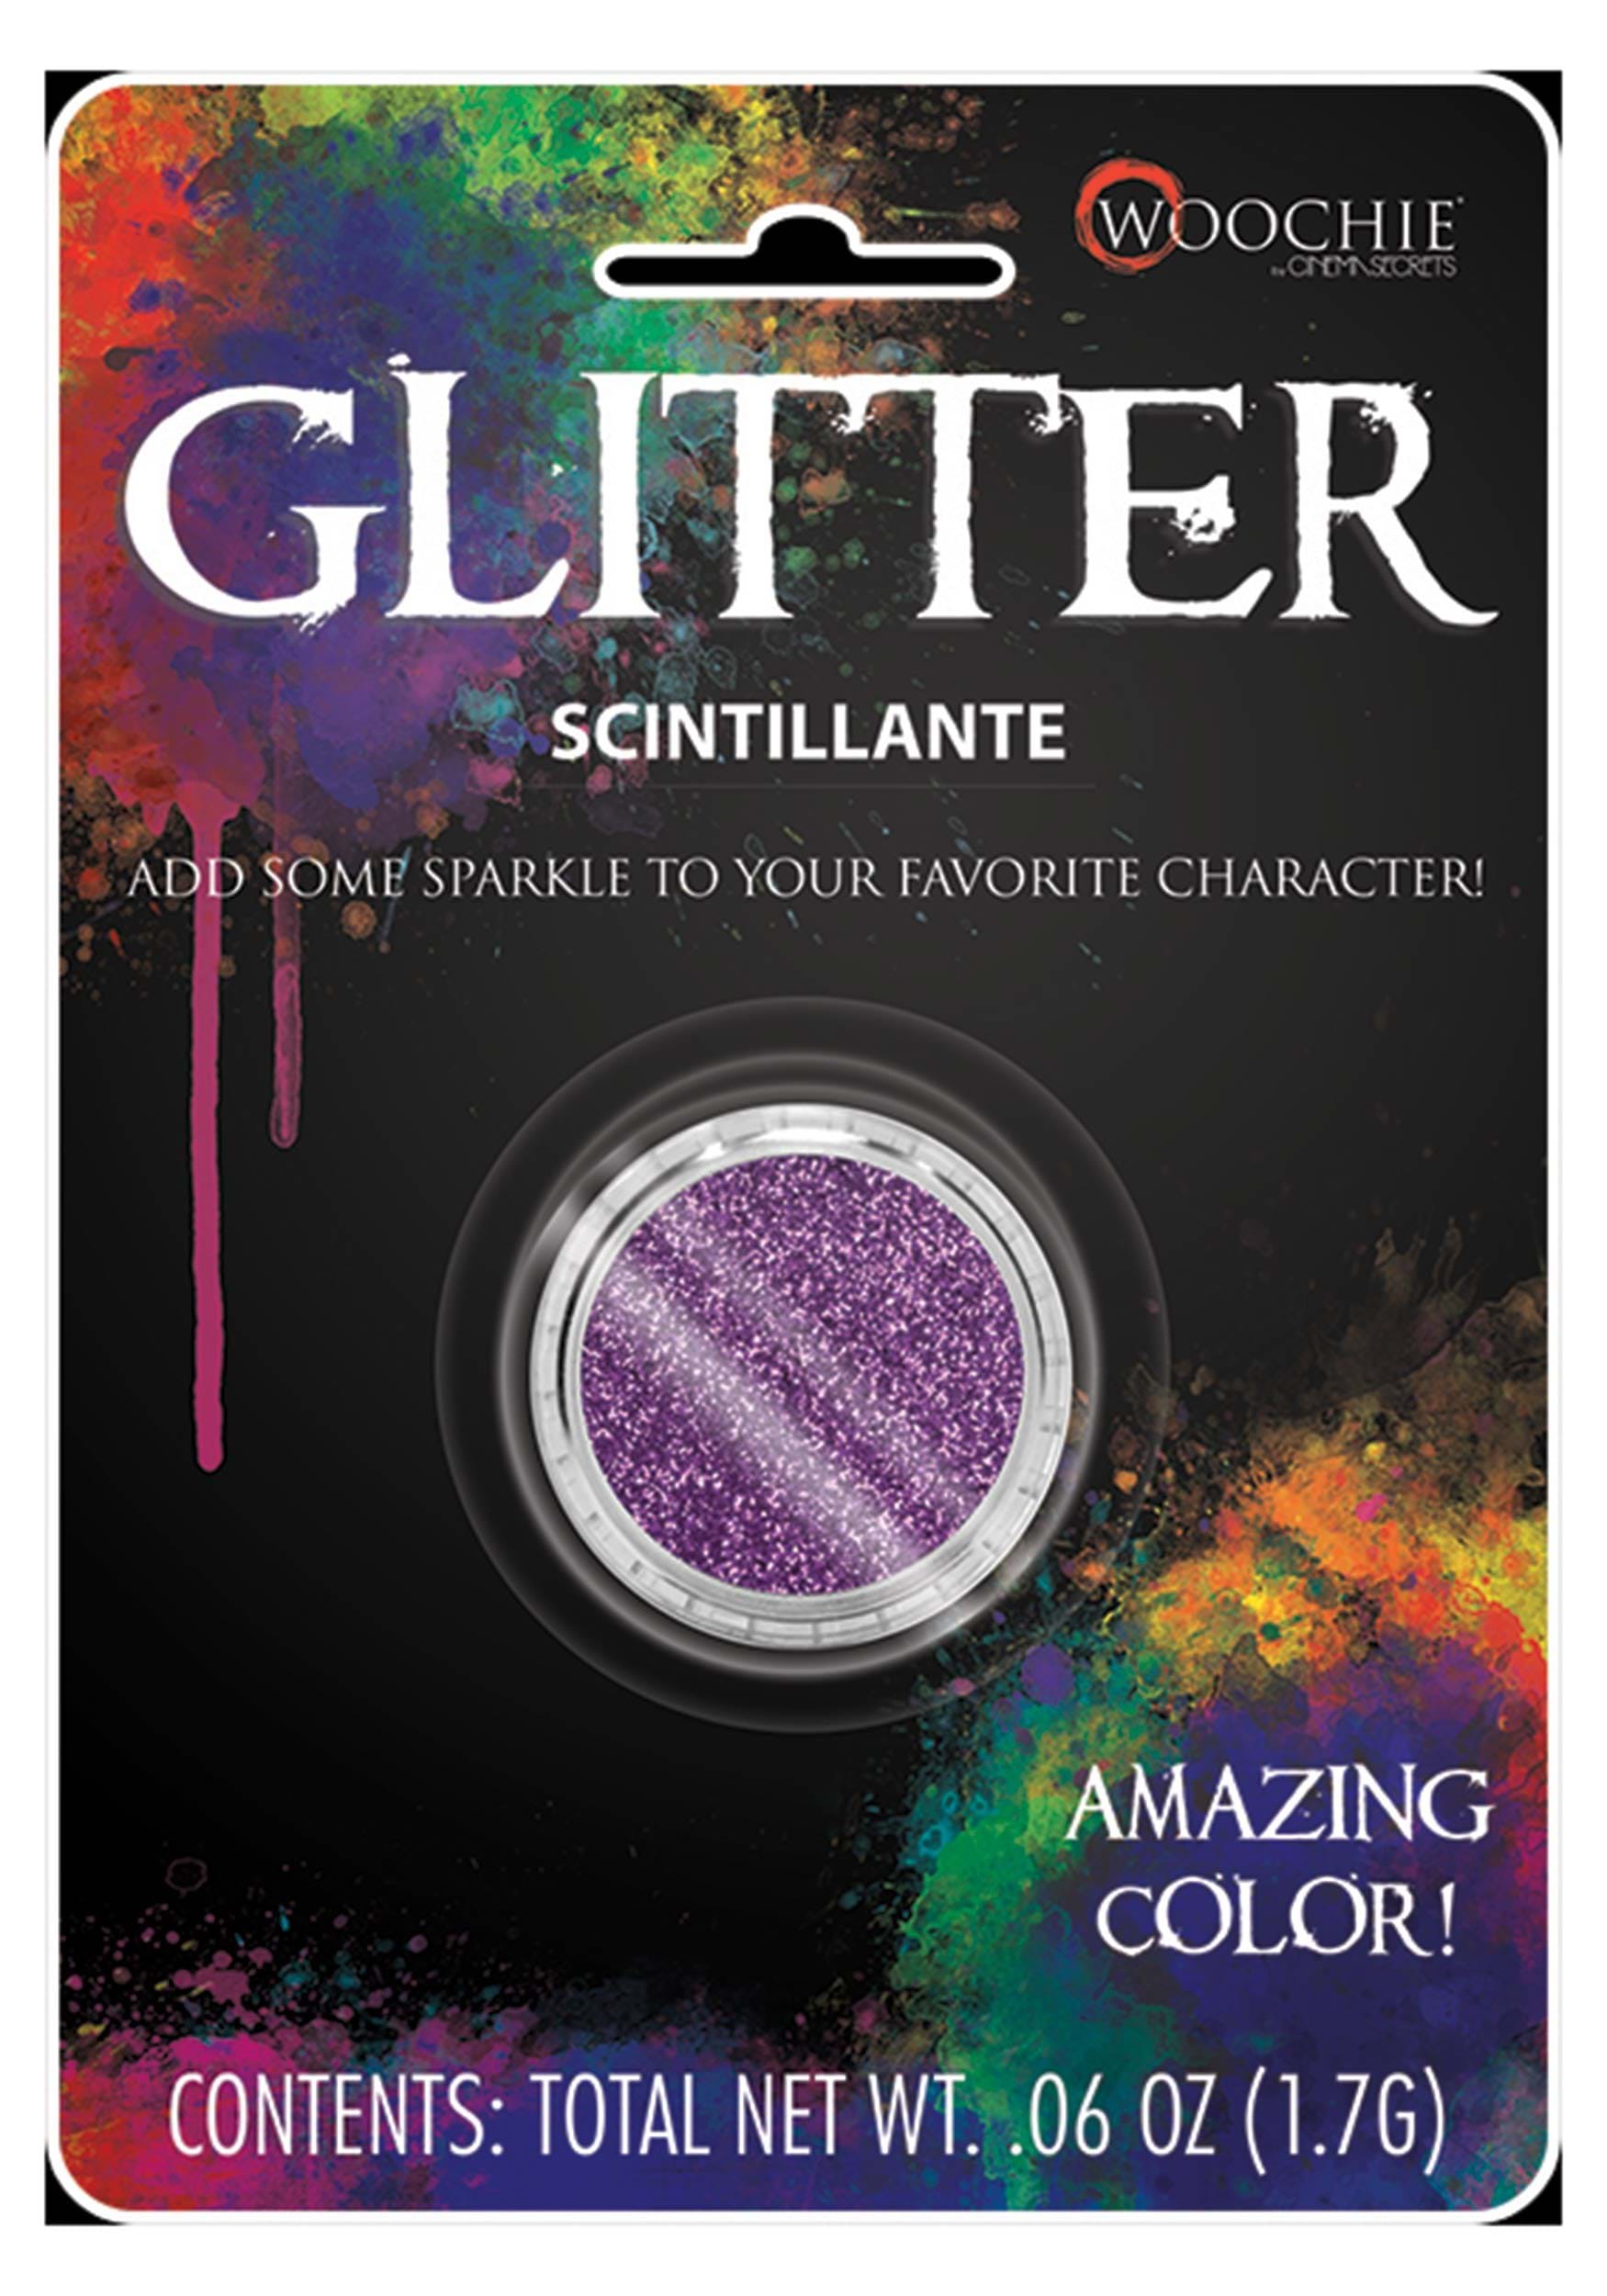 Purple Iridescnet Glitter Makeup